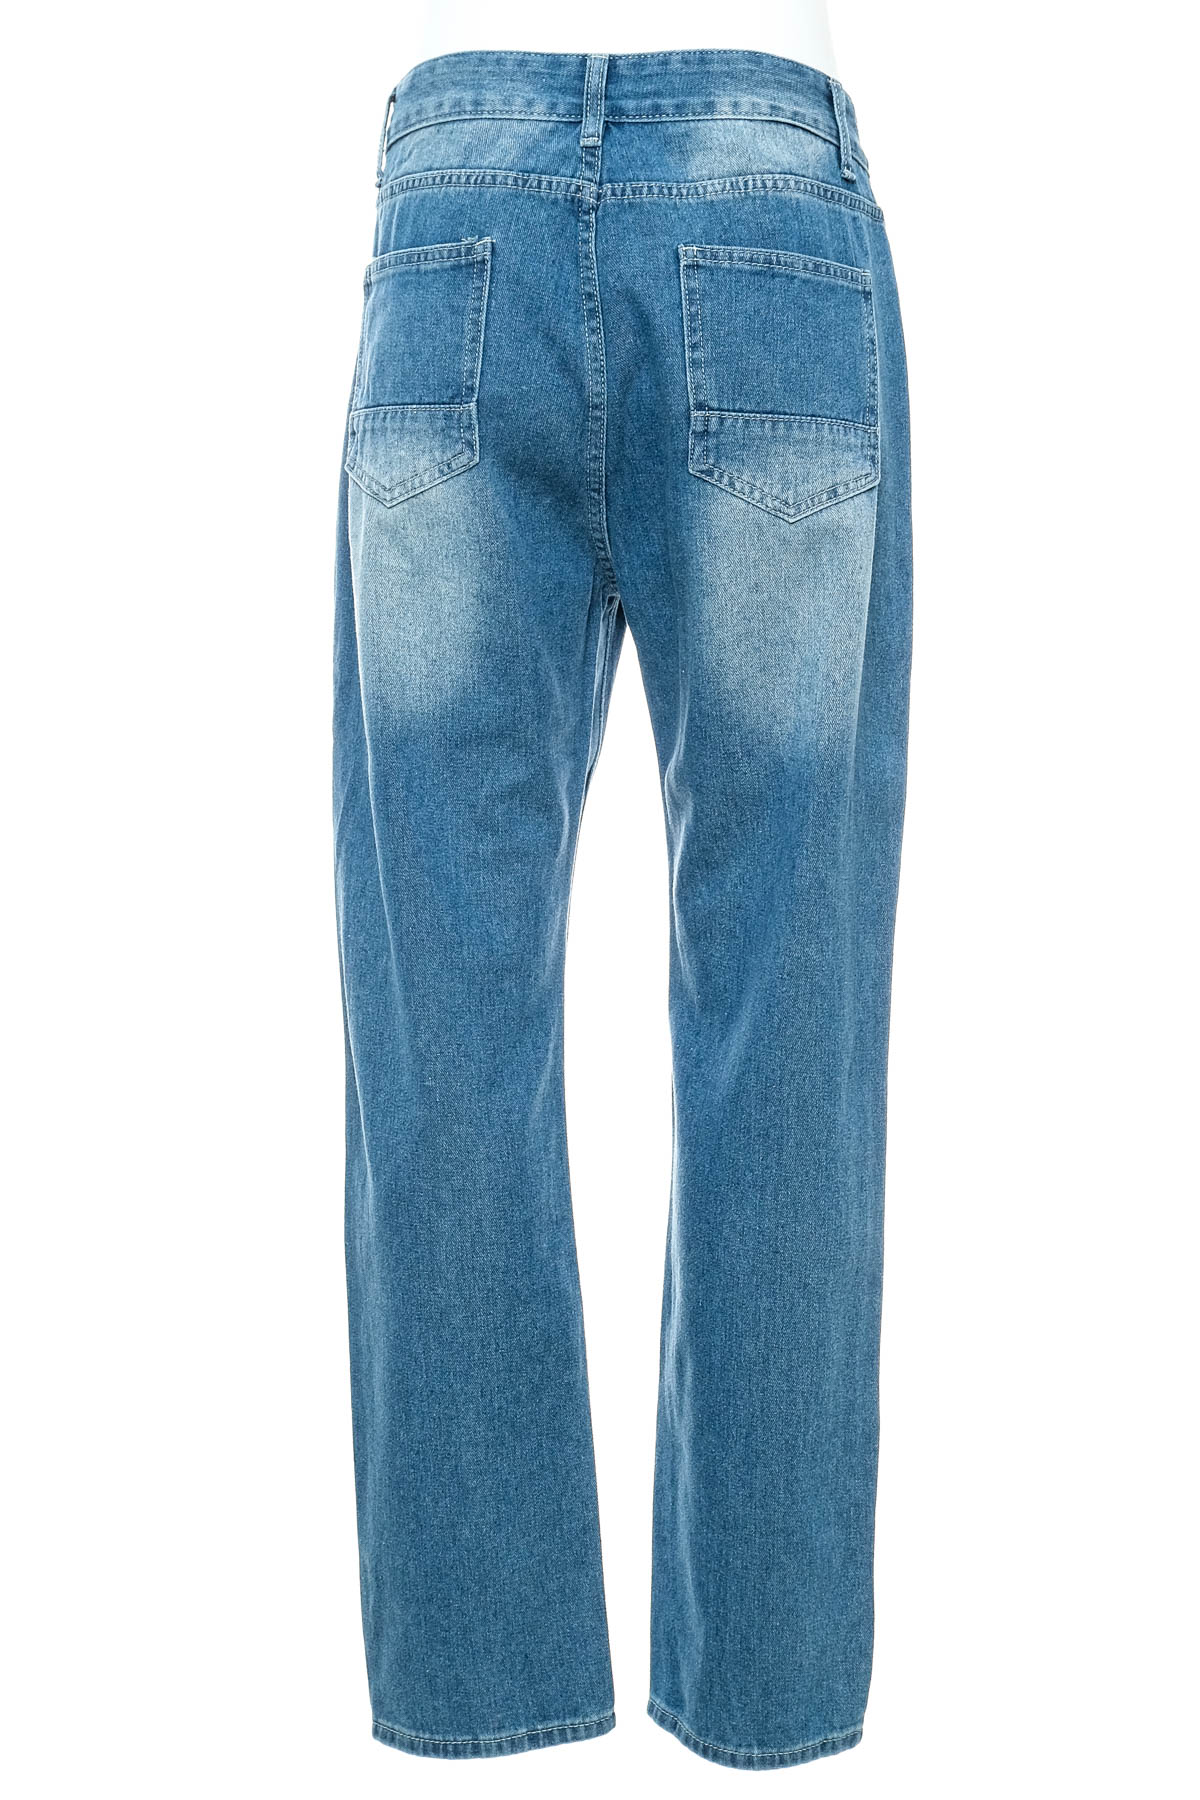 Men's jeans - 1